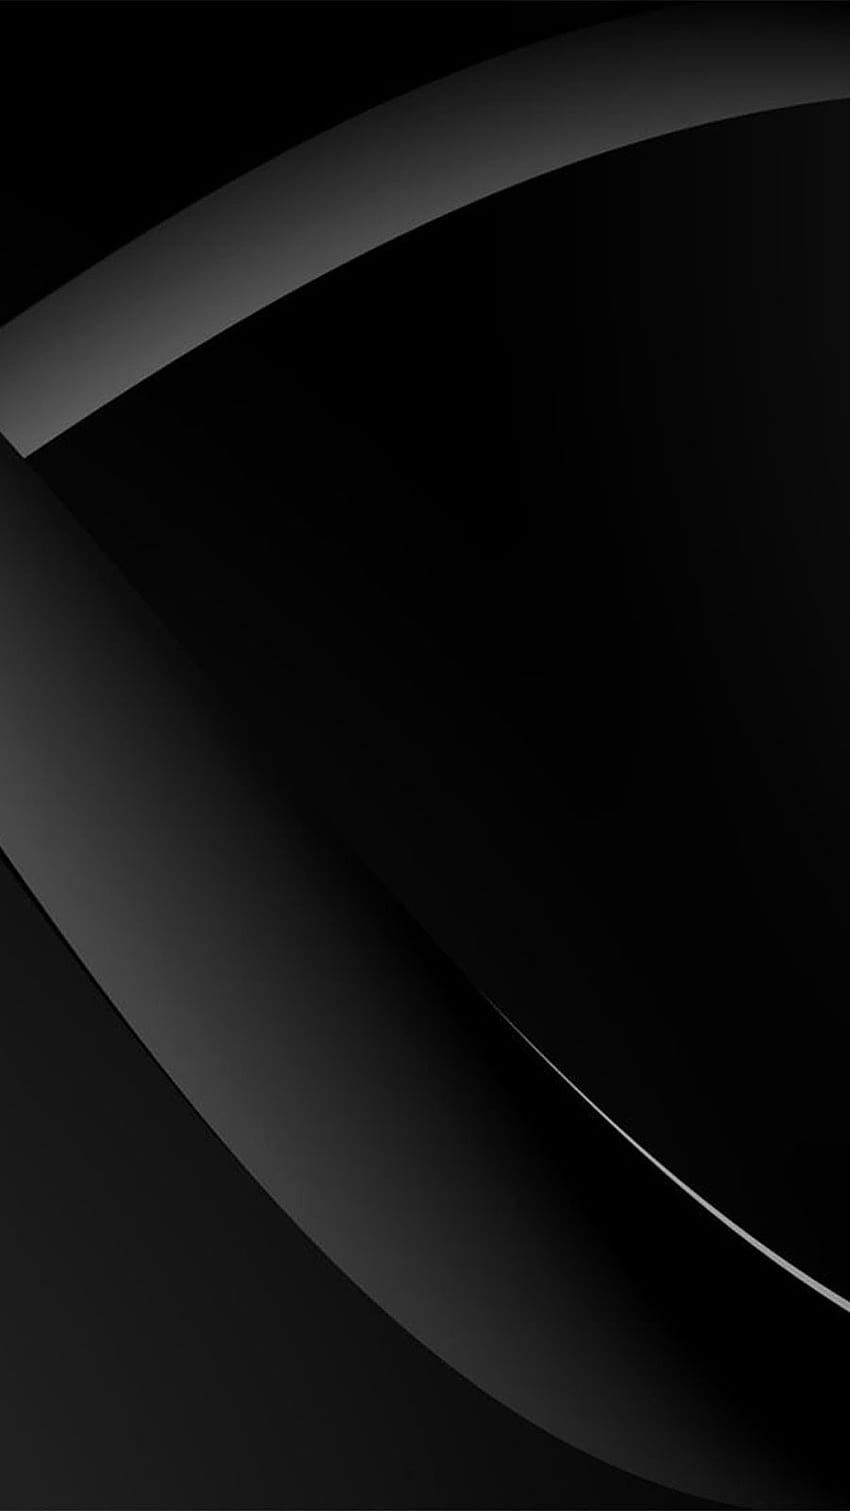 ブラックベリーのテーマ nokia lumia 920 黒 HD電話の壁紙